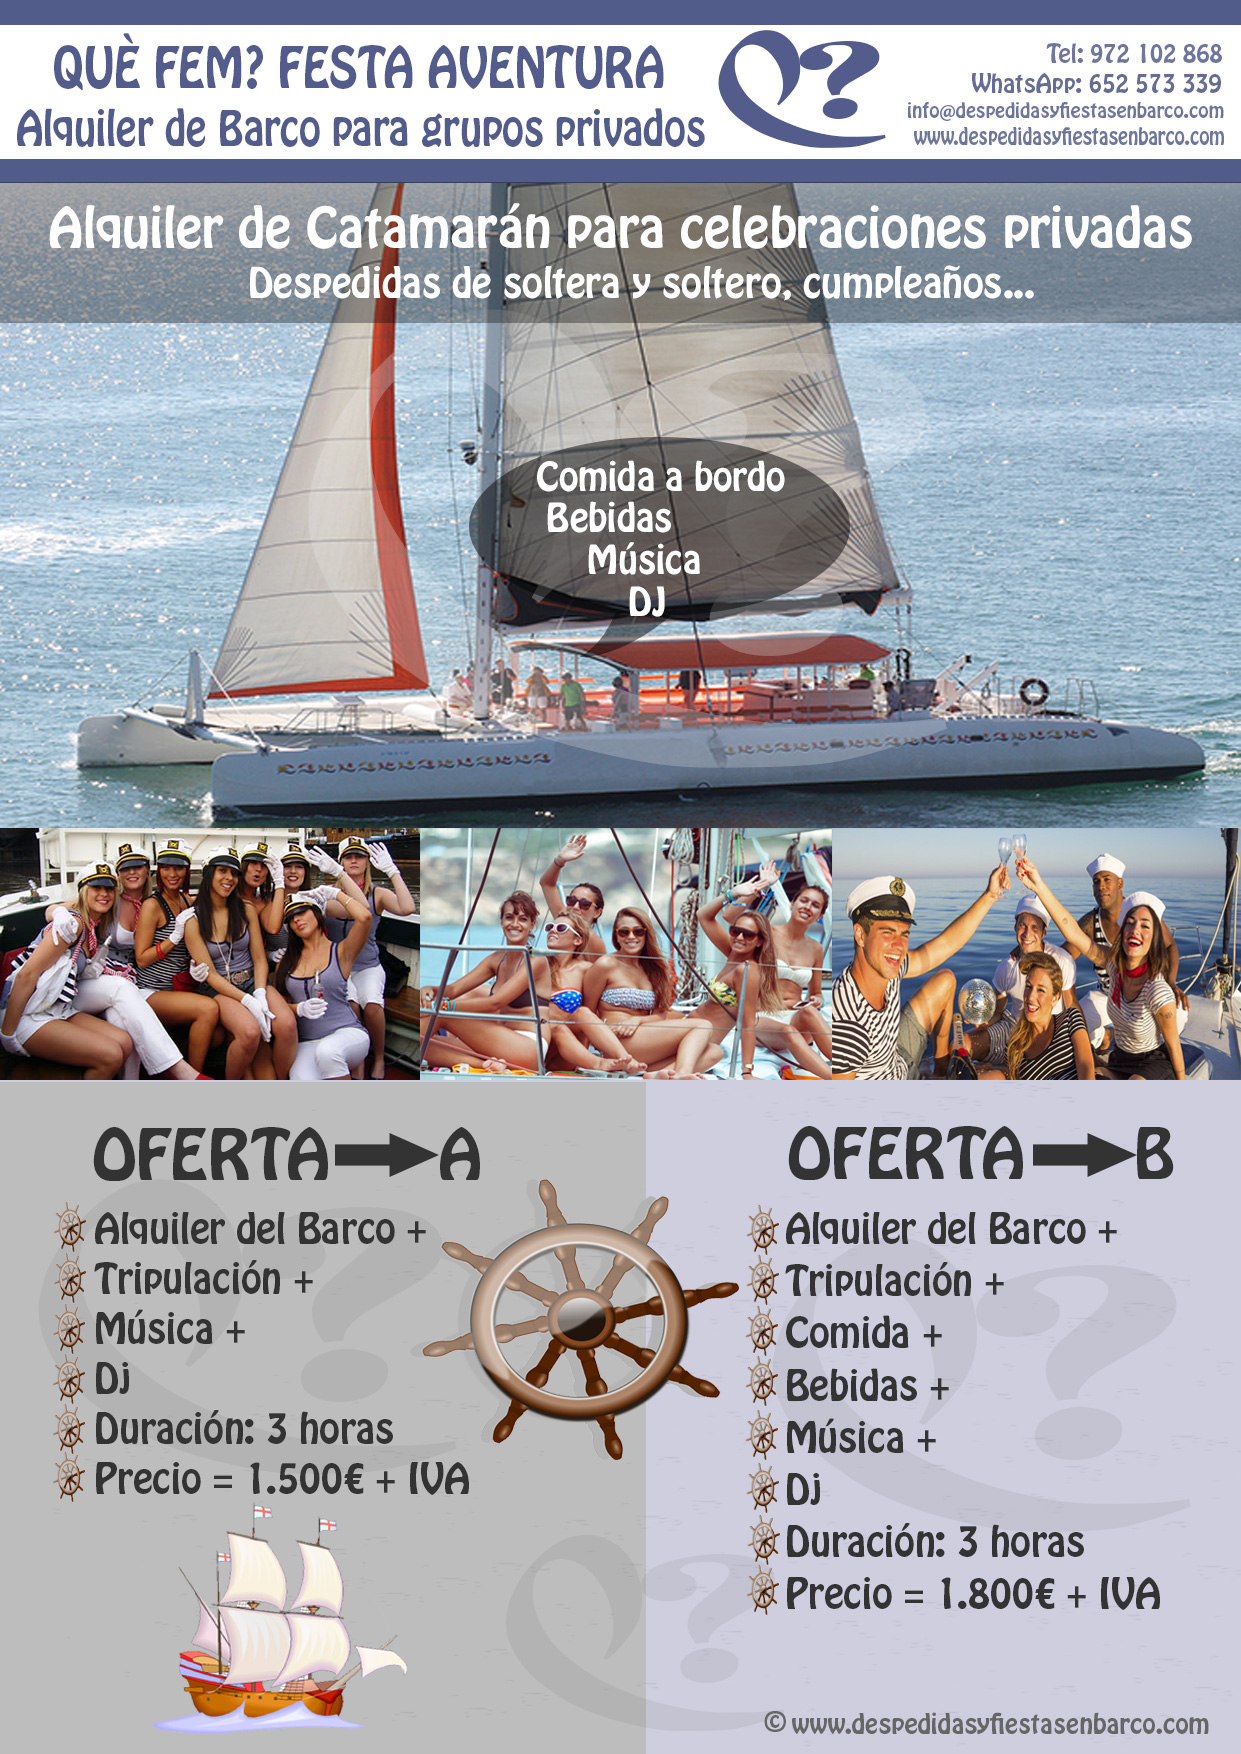 Alquiler de Barcos para fiestas privadas en Tarragona, Salou y Cambrils